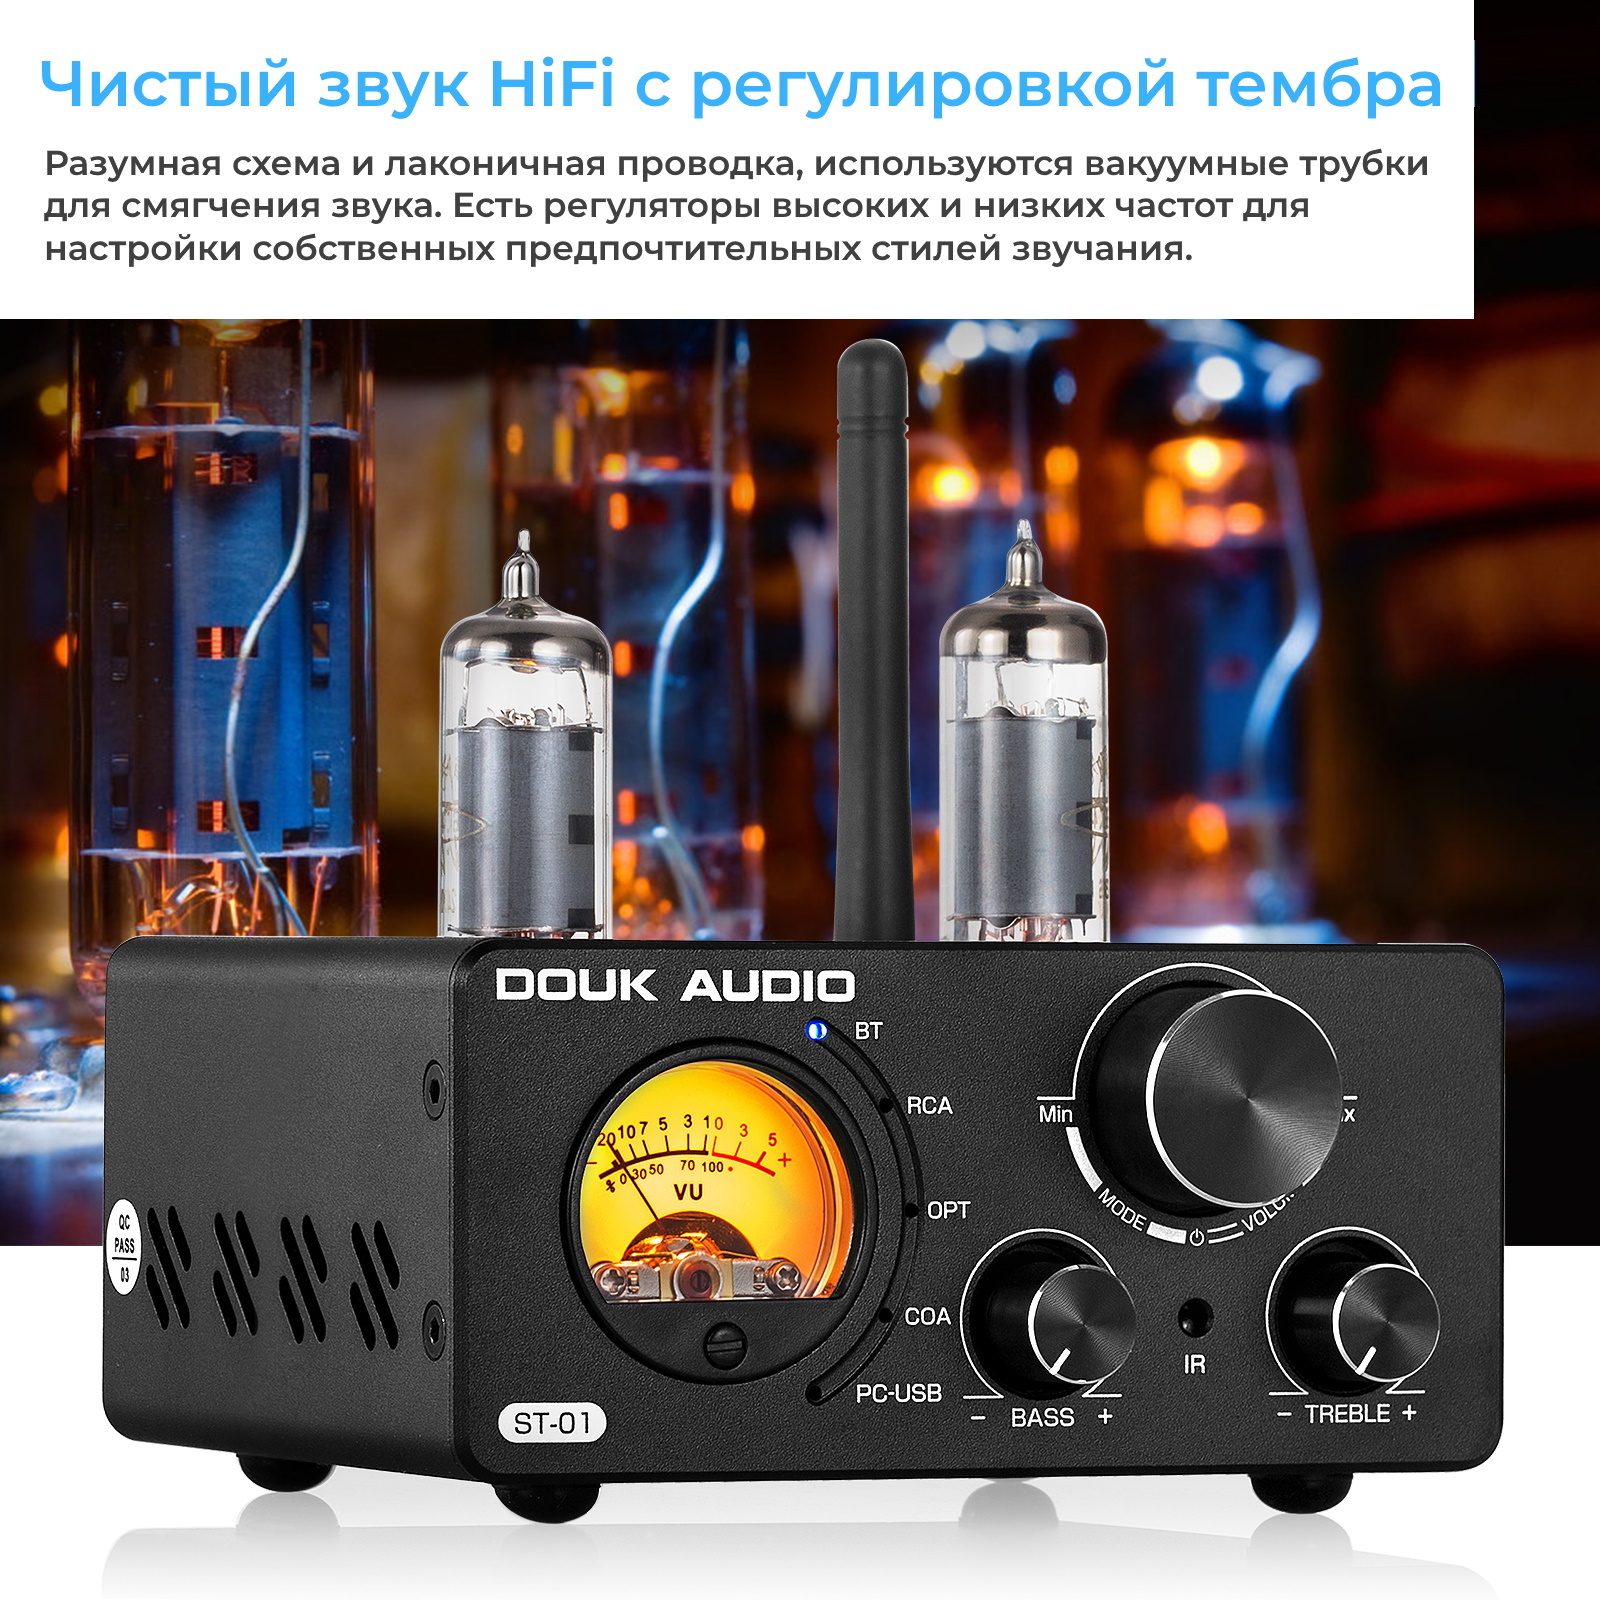 Douk audio st-01 review